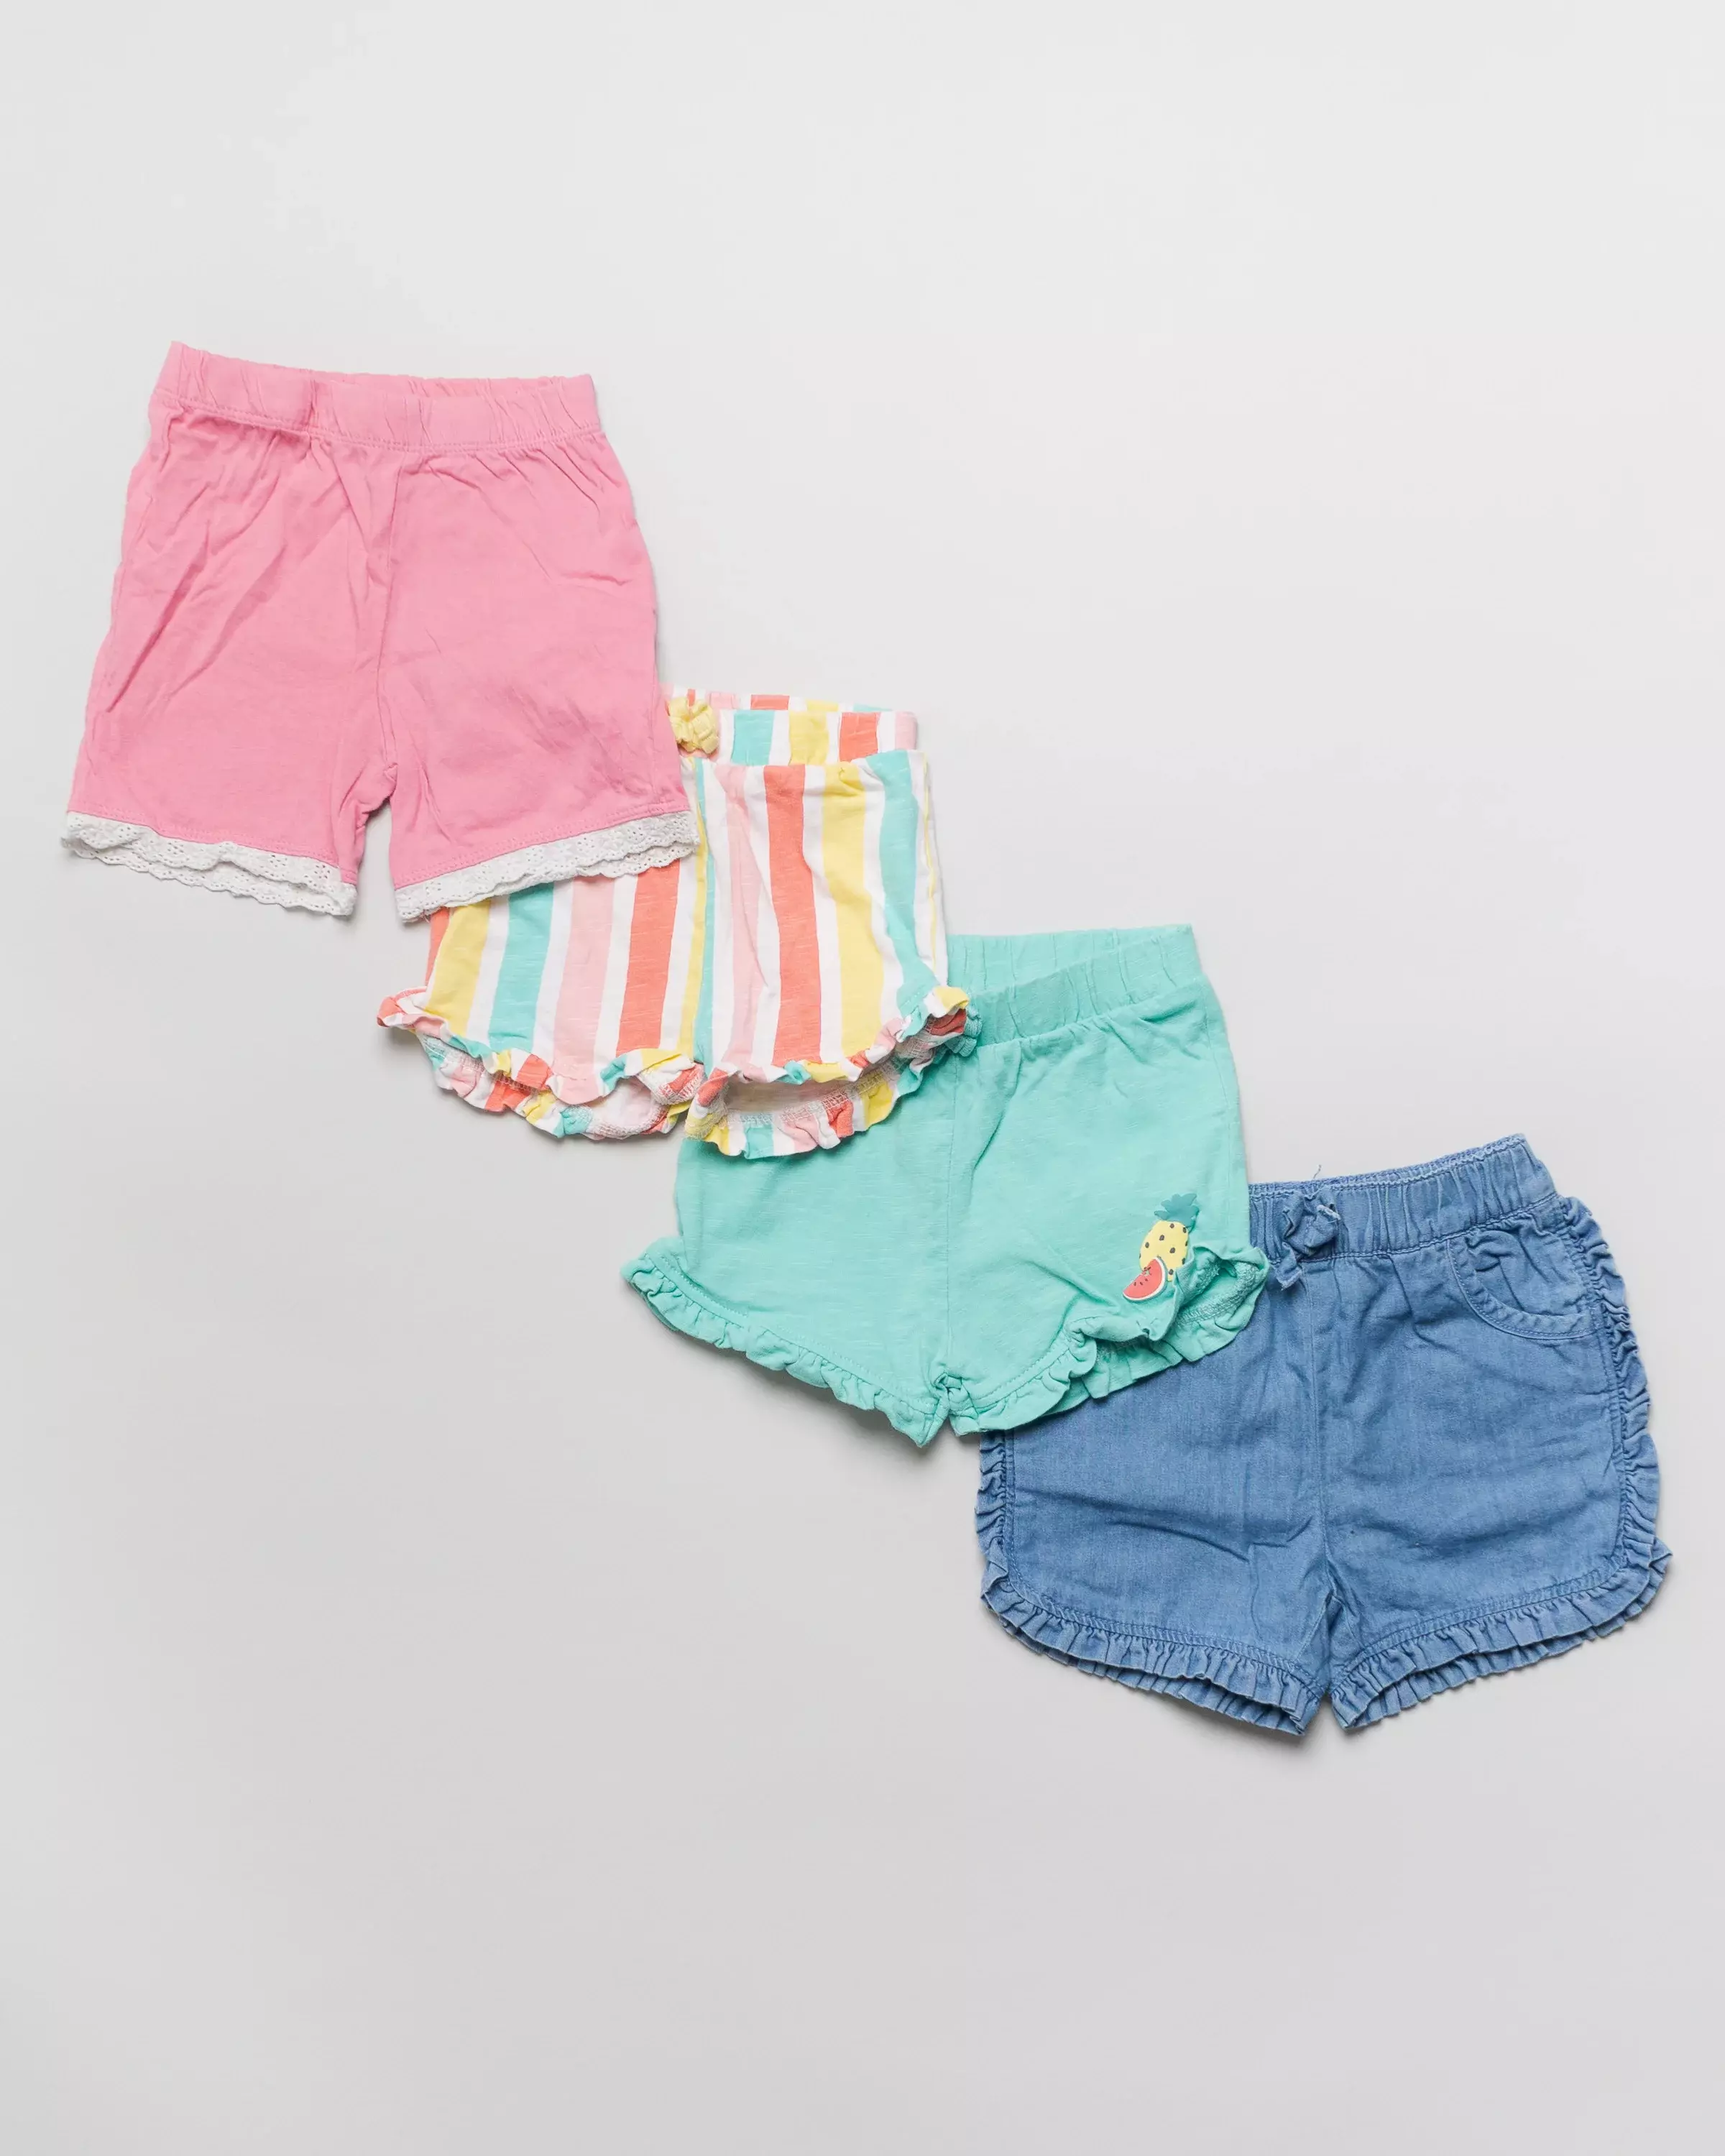 4 Shorts Gr. 74 – Kurze Hosen, Jeans, Streifen, Wassermelone, Ananas, pink, blau, Set, Pack